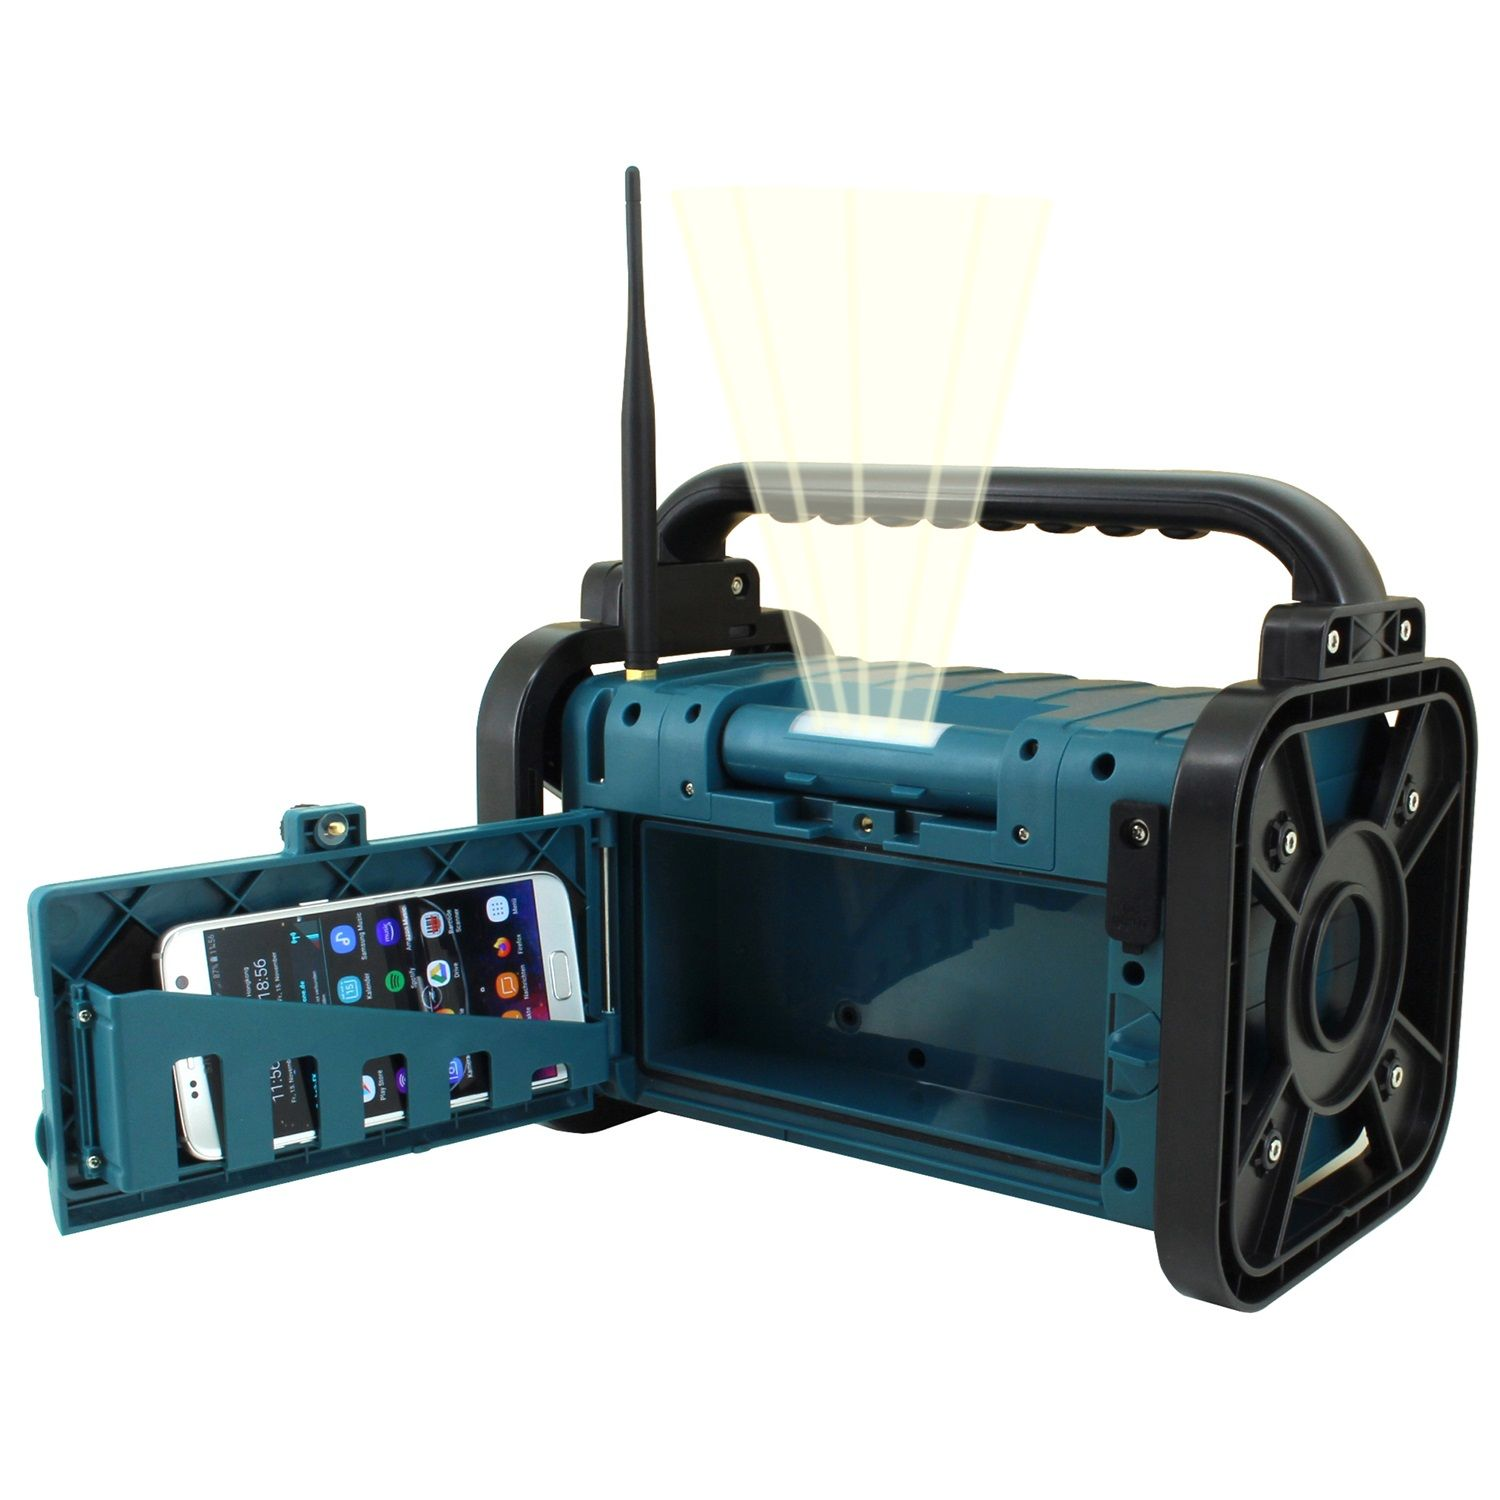 SOUNDMASTER DAB80 Multifunktionsradio, DAB+, FM, blau Bluetooth, FM, DAB+, AM, DAB